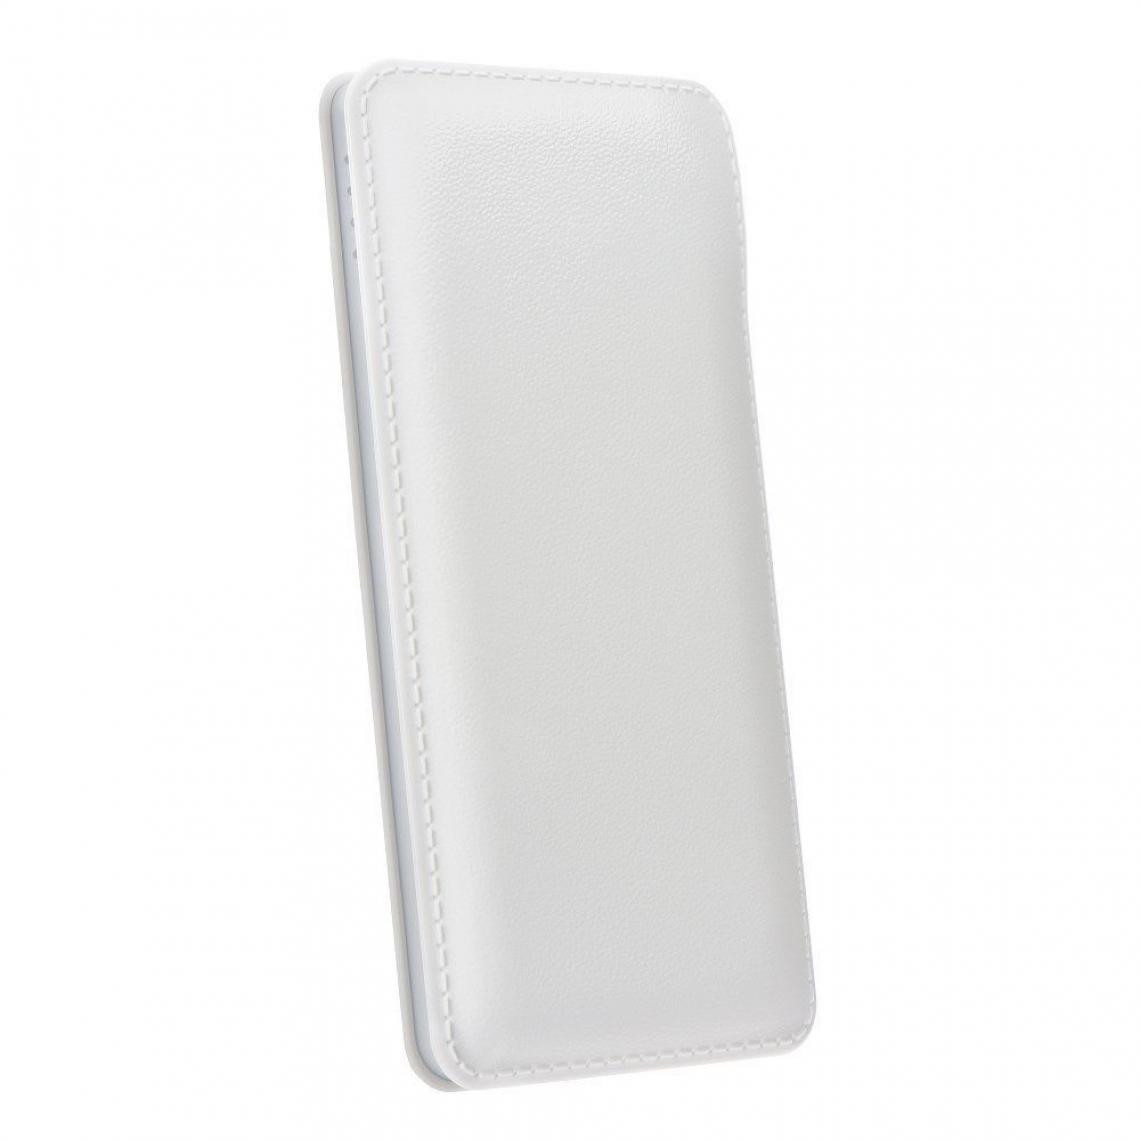 Ozzzo - Chargeur batterie externe 30000 mAh powerbank ozzzo blanc pour Xiaomi Redmi Go - Autres accessoires smartphone